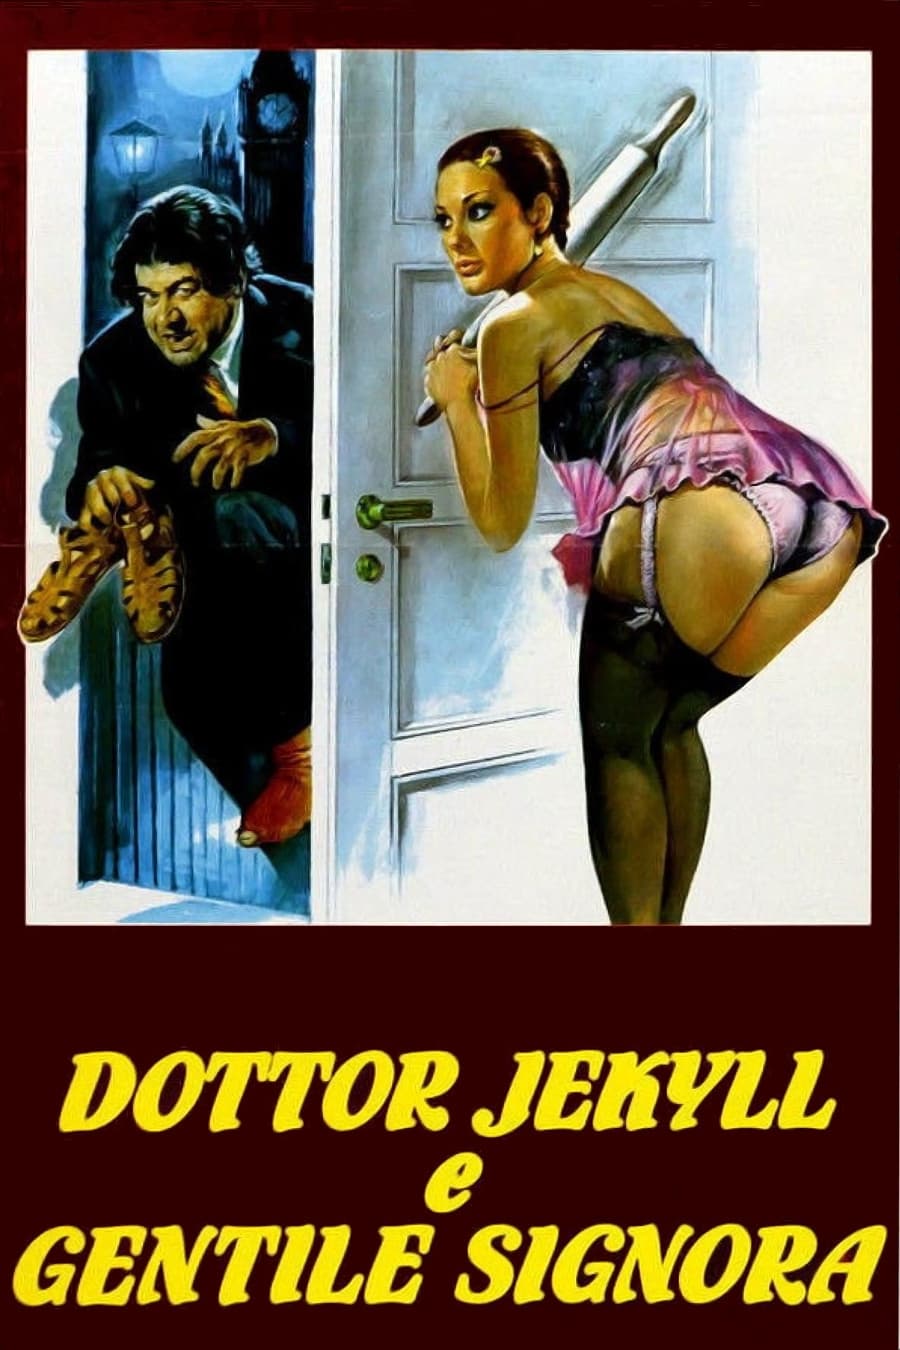 Al doctor Jeckyll le gustan calientes (1979)